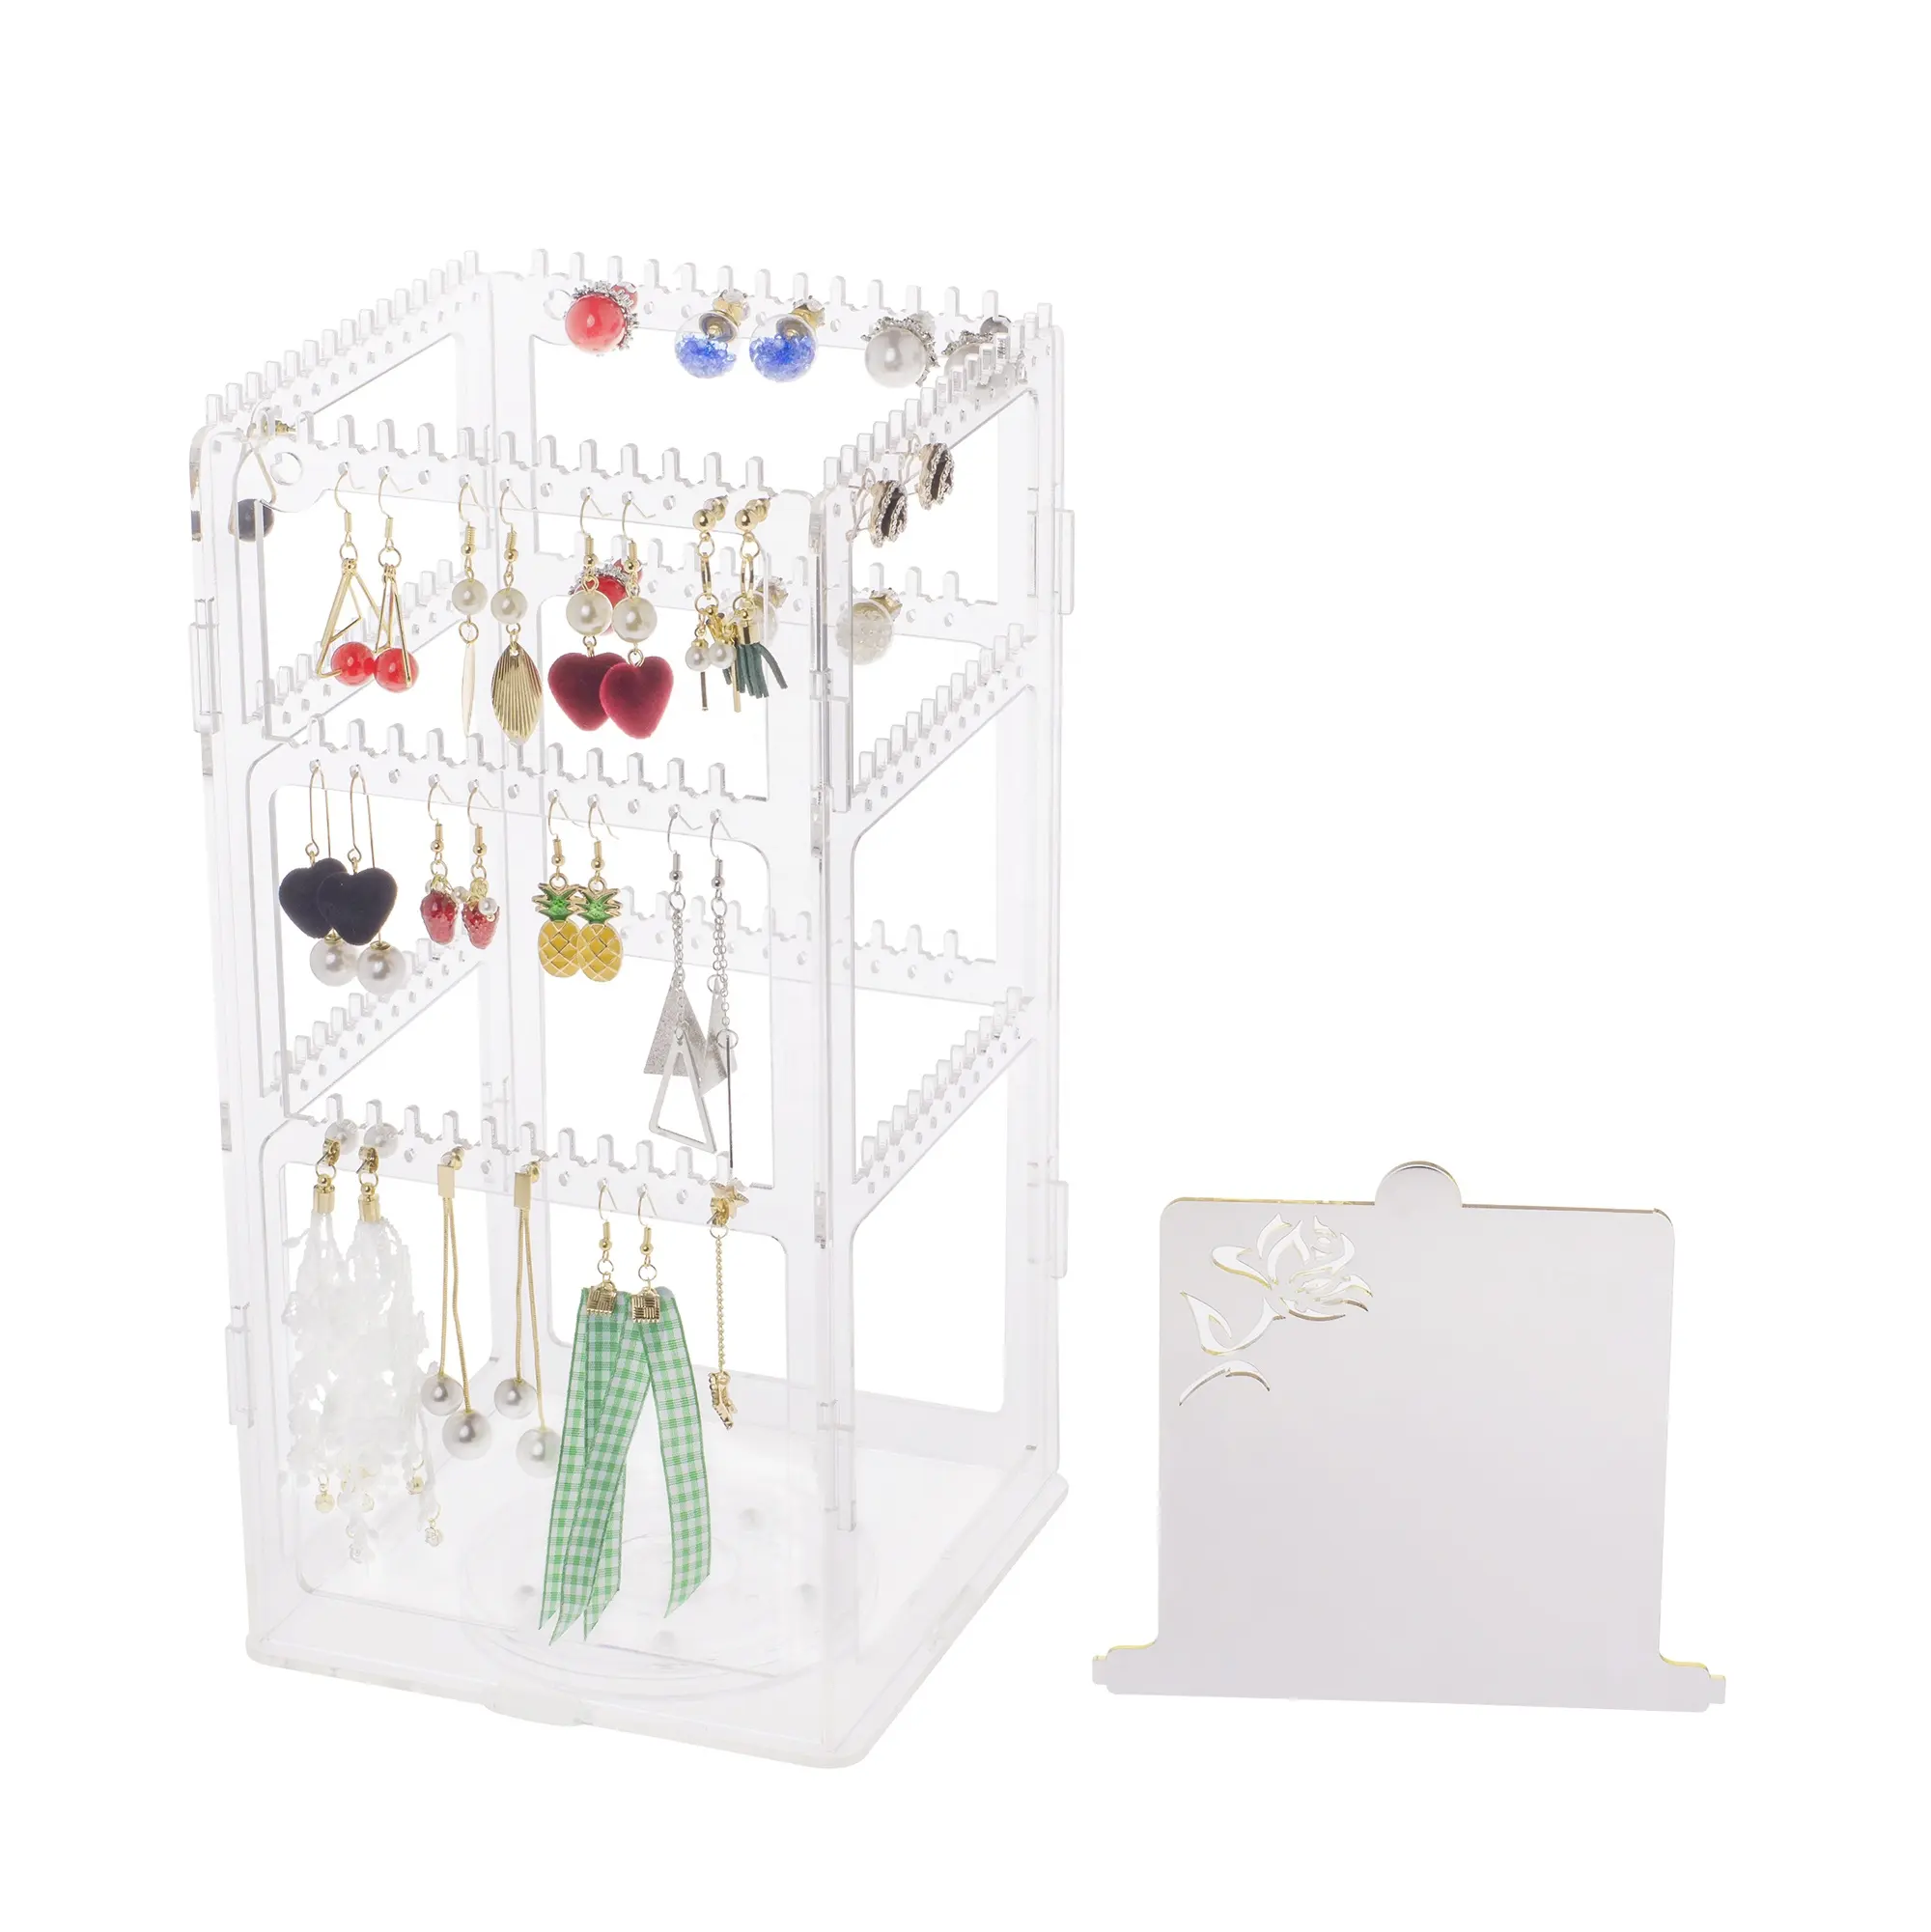 Choix amusant haute qualité 360 rotatif porte-bijoux porte-boucle d'oreille support affichage 4 niveaux affichage pour magasin